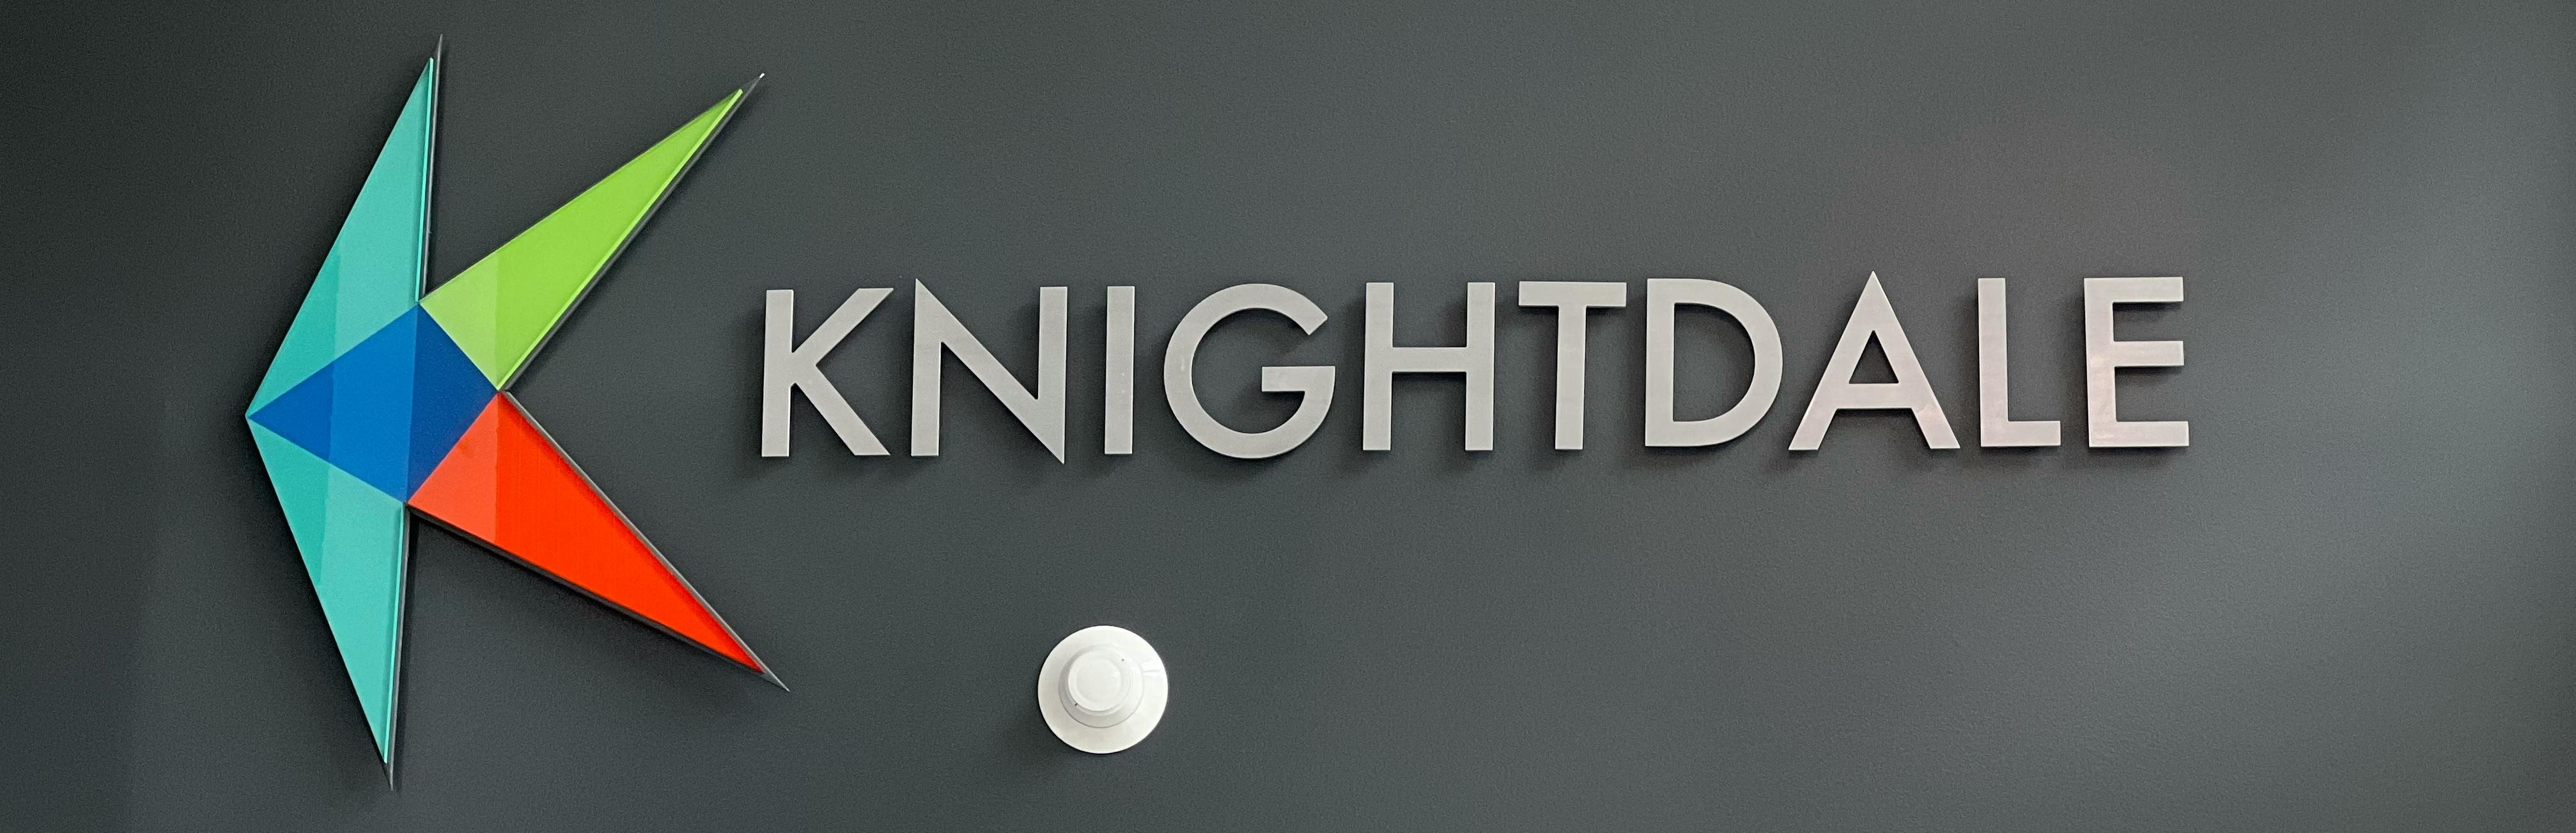 Knightdale logo